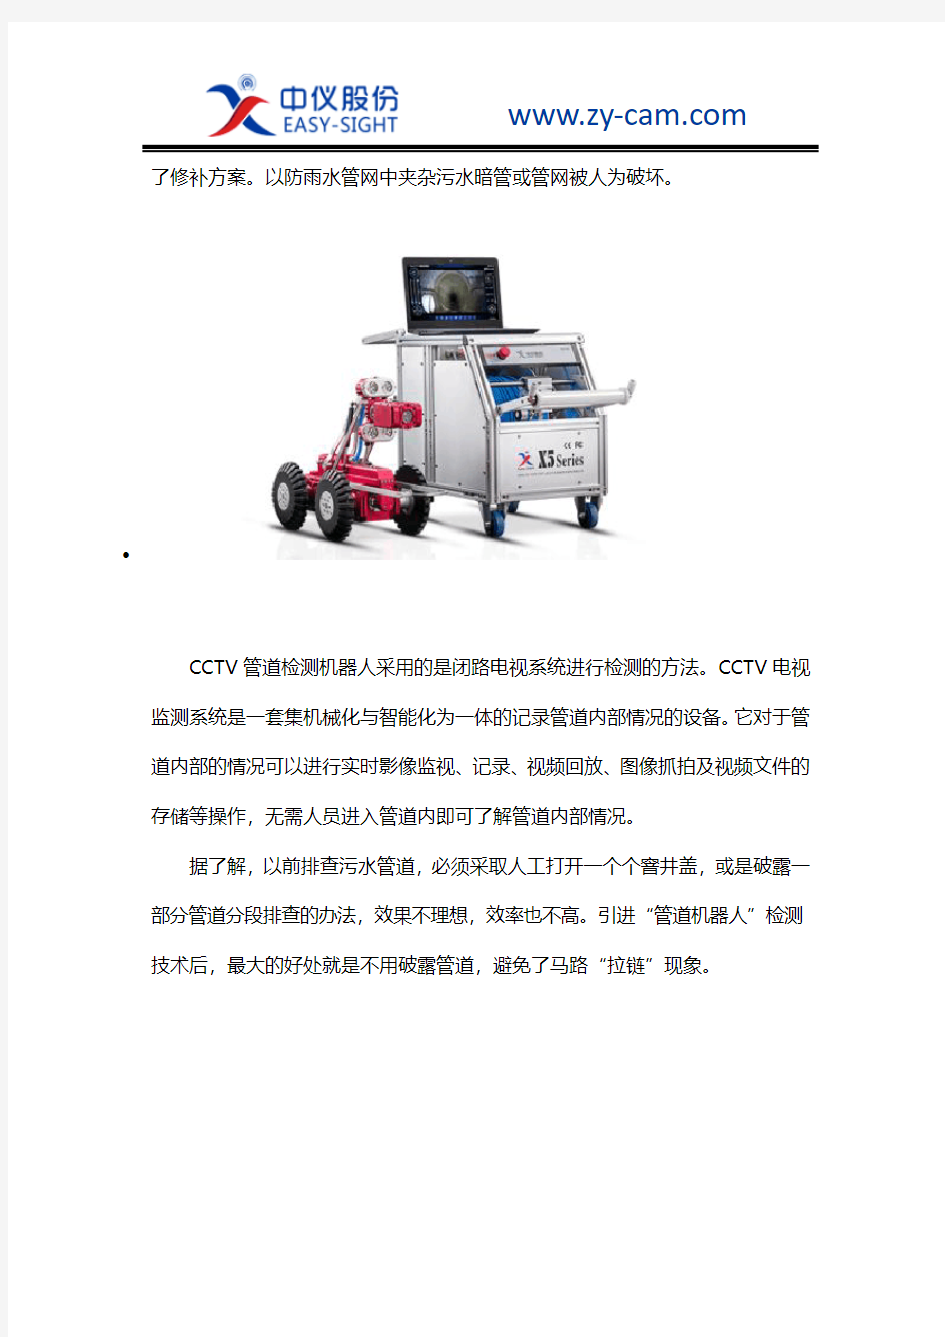 CCTV管道检测机器人